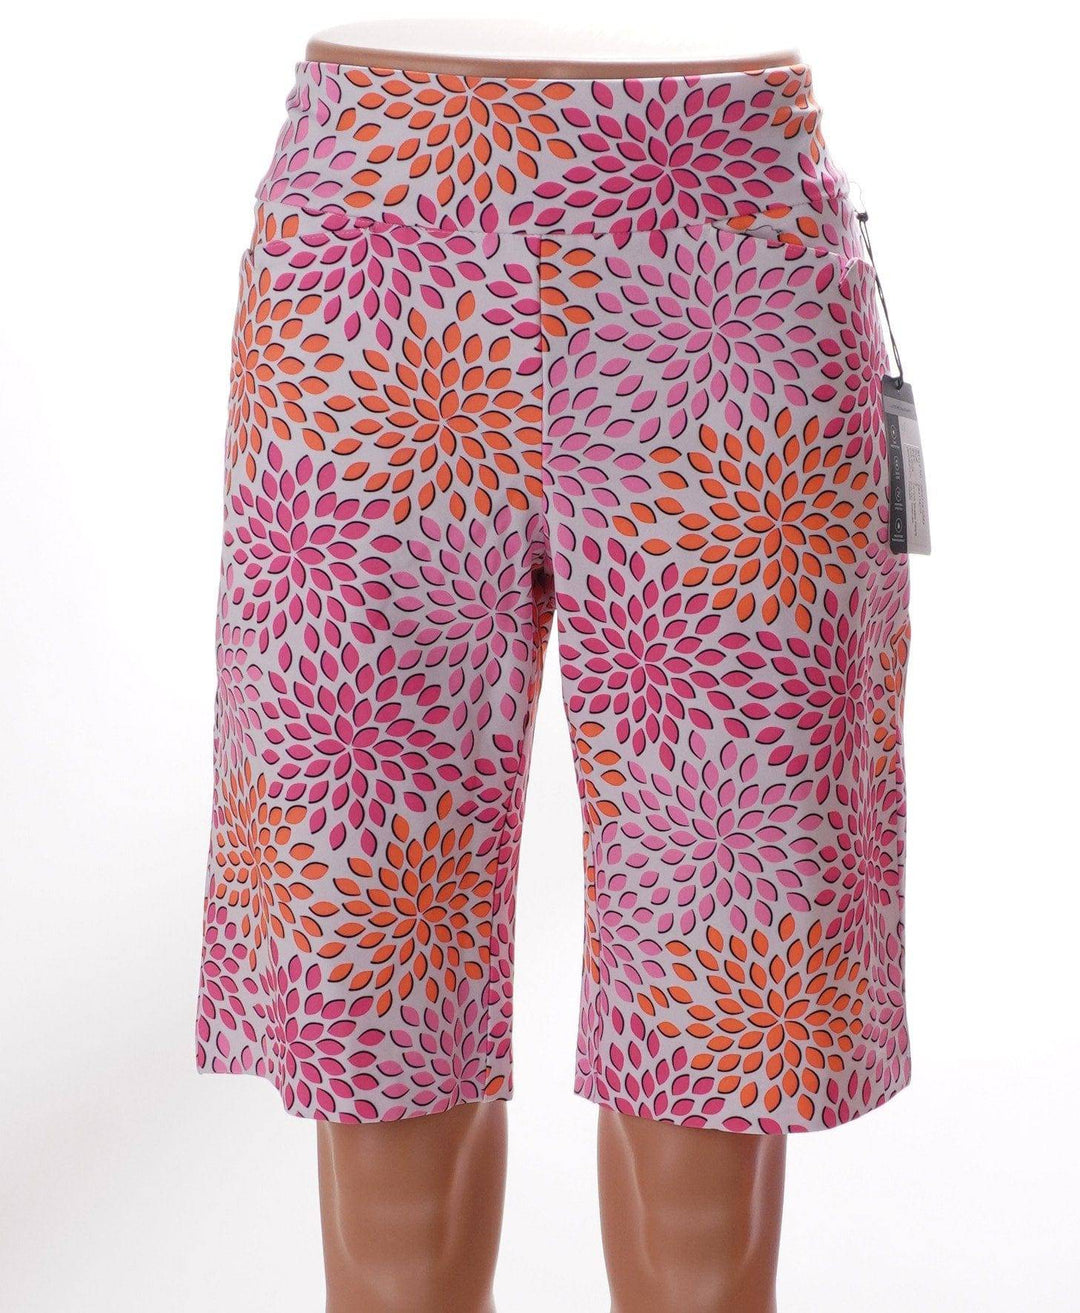 Tail Pink / 6 Tail Shorts - Mosaic Petals - Size 6